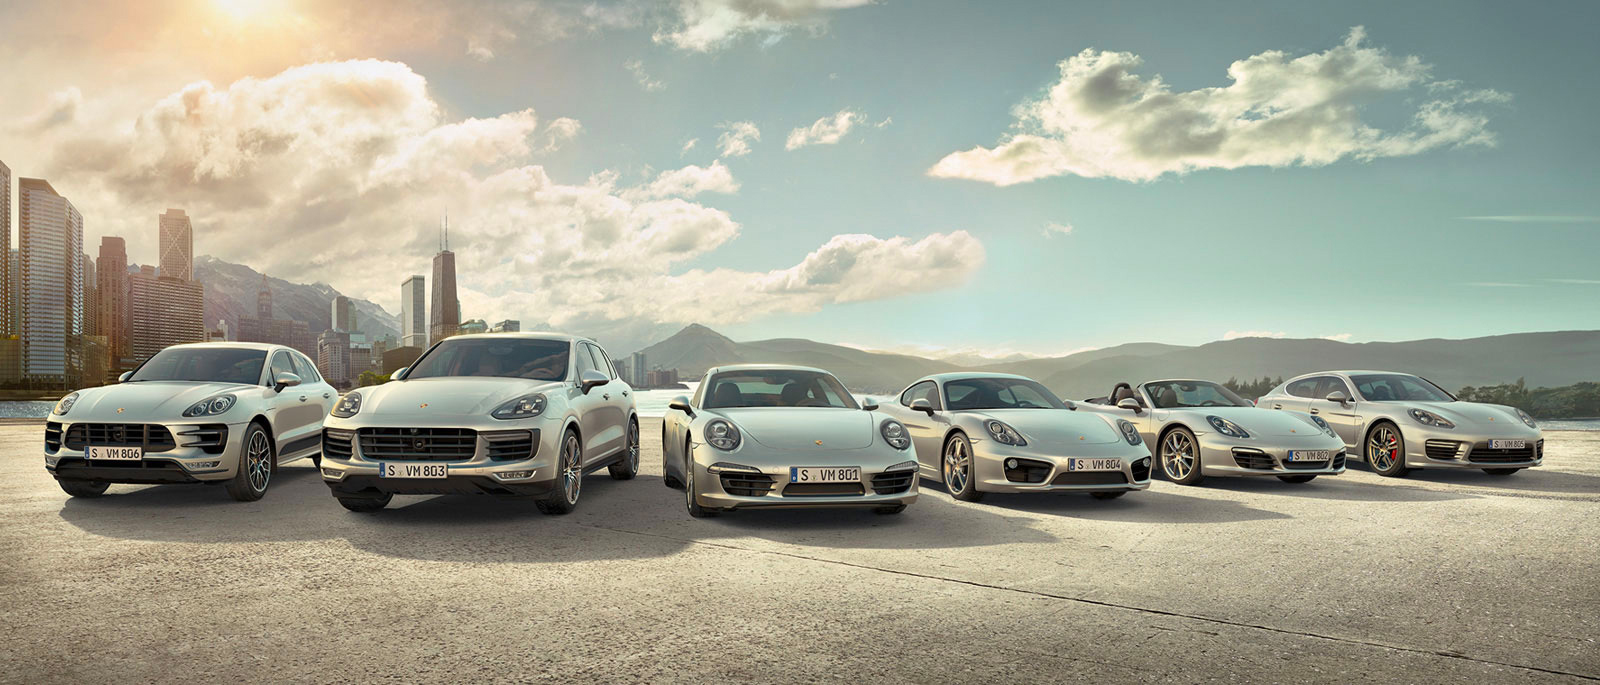 Porsche Models